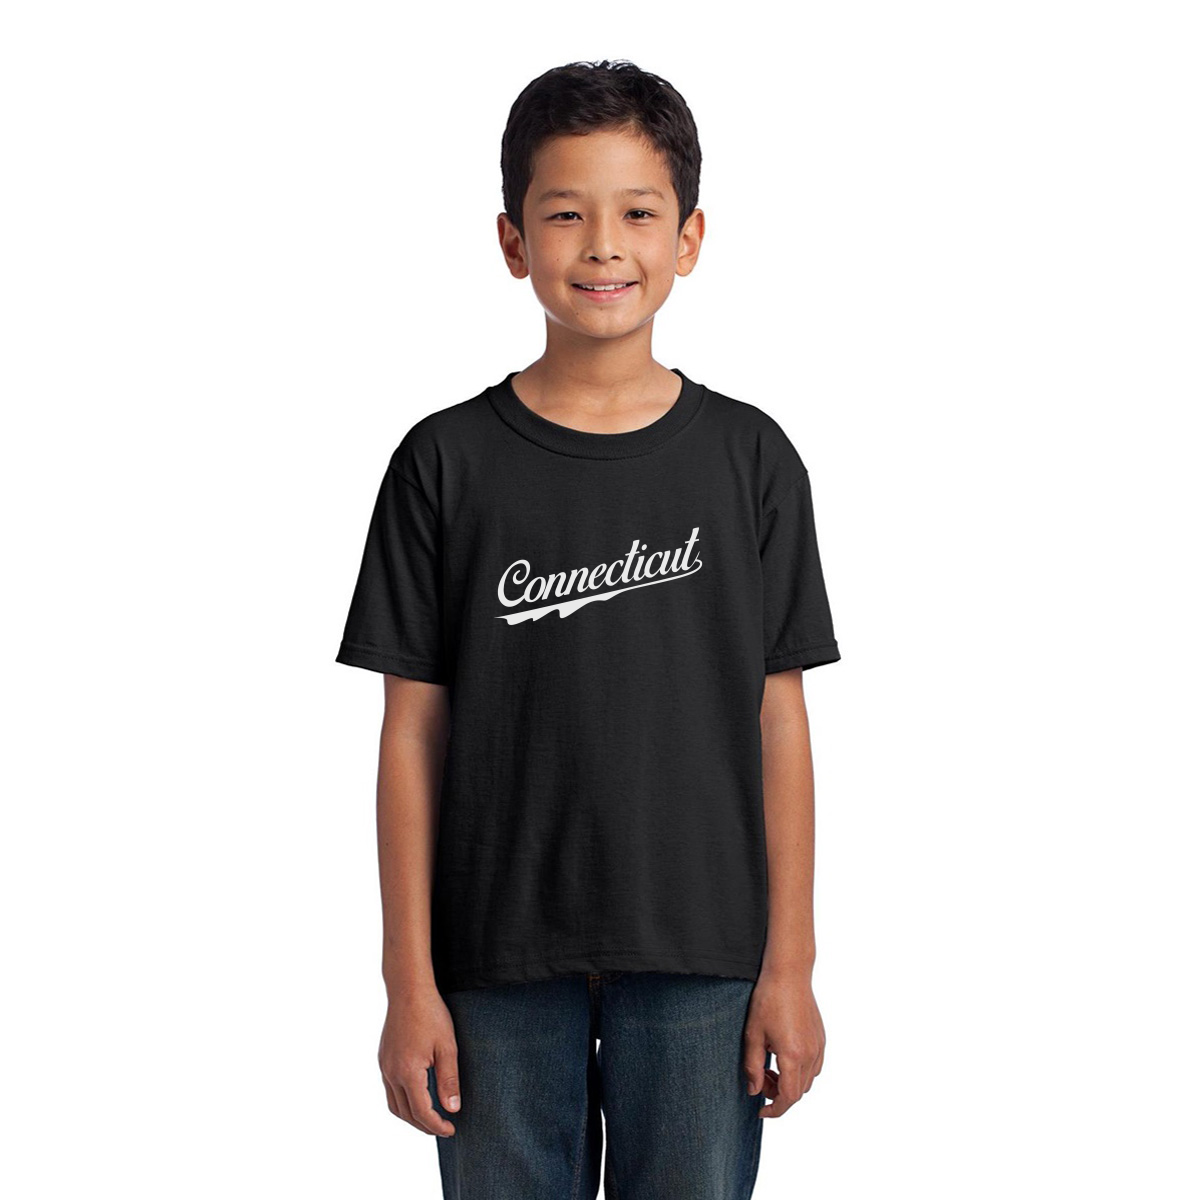 Connecticut Kids T-shirt | Black